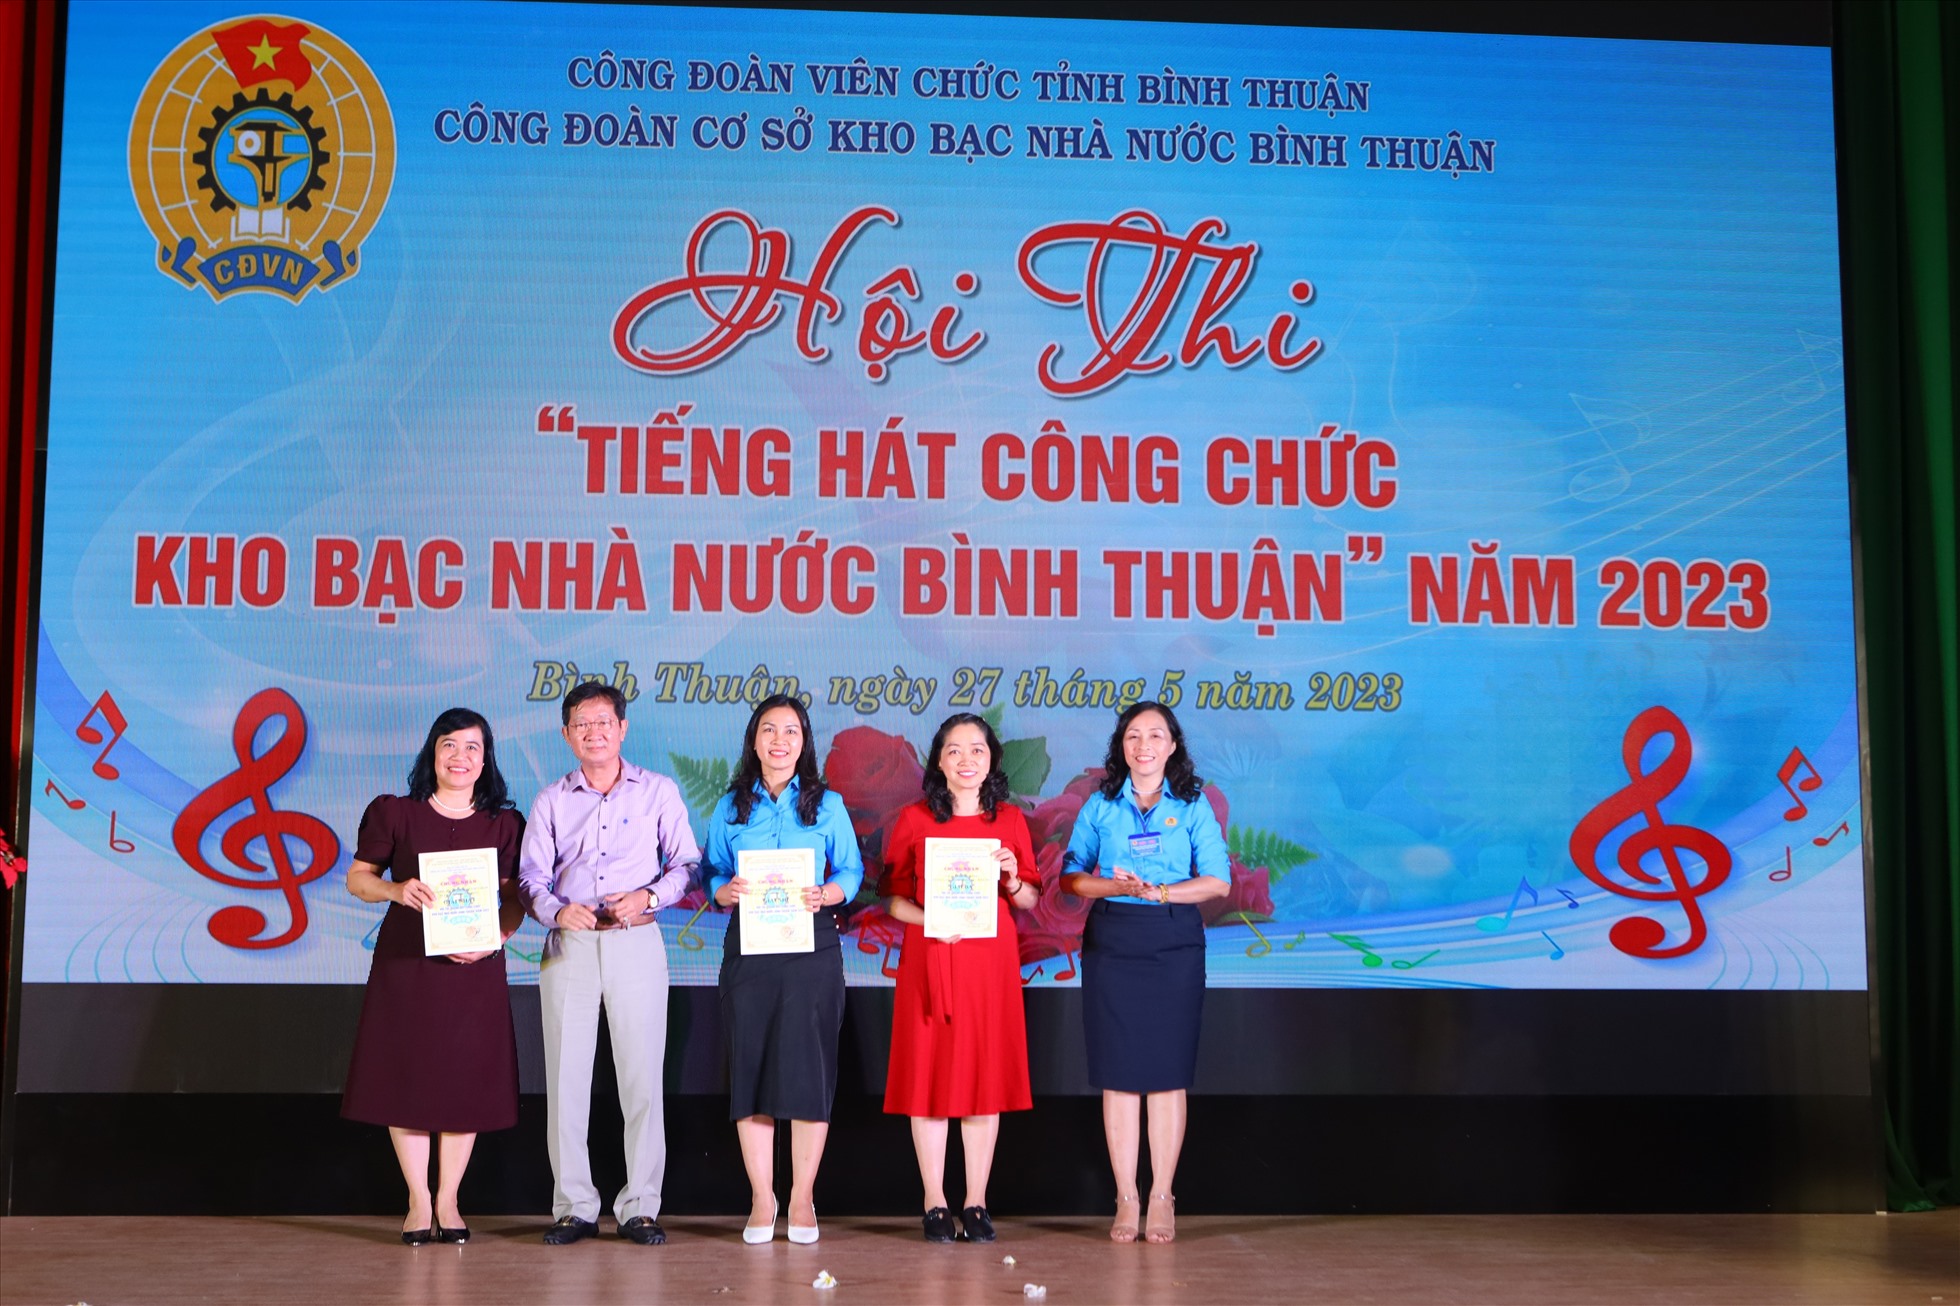 Giám đốc KBNN Bình Thuận và Chủ tịch CĐCS trao giải cho các Tổ công đoàn trong phần thi “Tiếng hát công chức Kho bạc Nhà nước Bình Thuận năm 2023”. Ảnh: Duy Tuấn